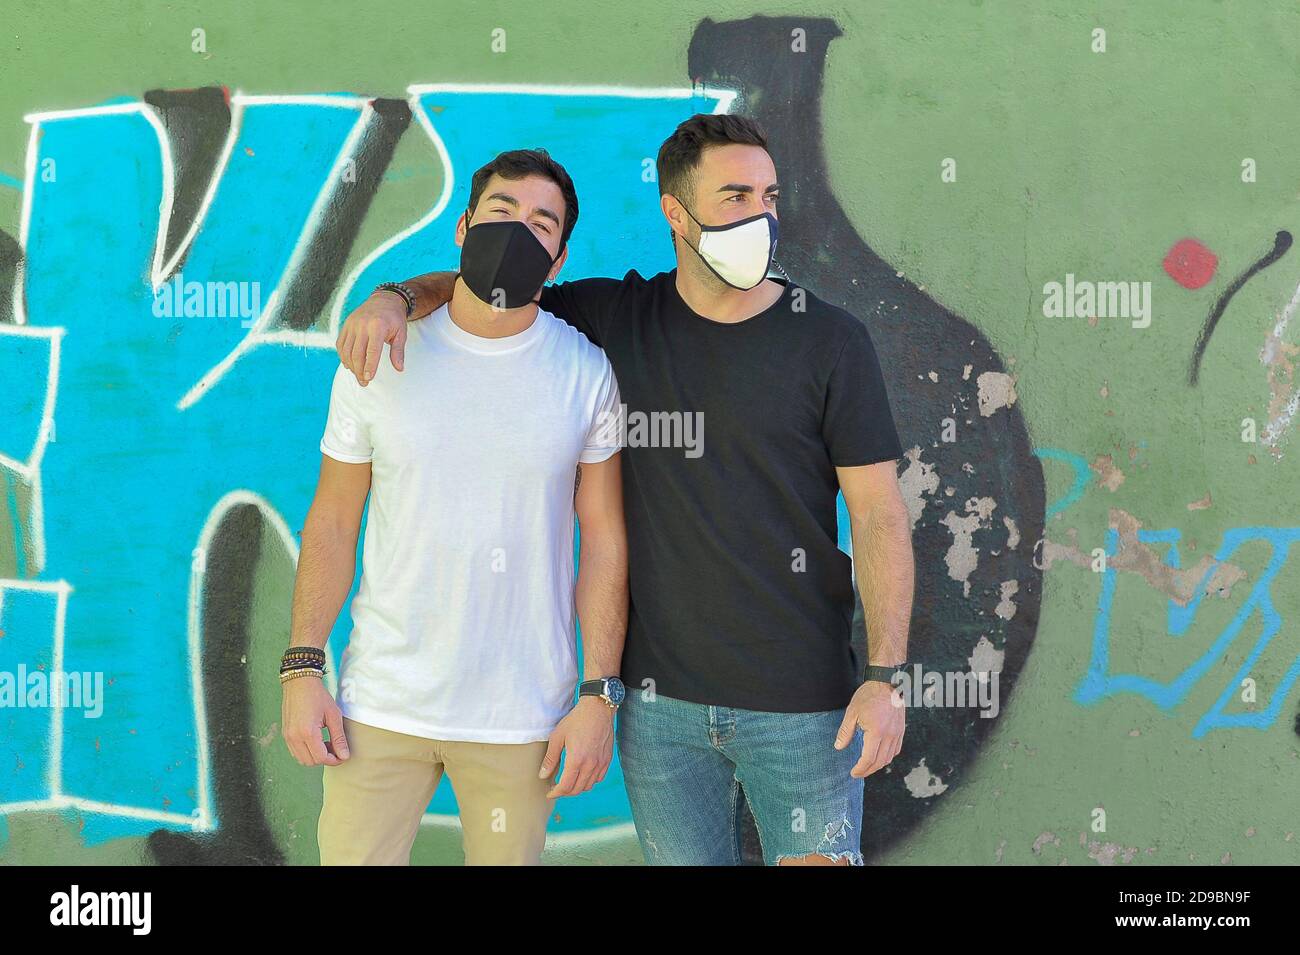 Deux amis utilisant un masque facial à l'extérieur. Concept amitié nouvelle norme Banque D'Images